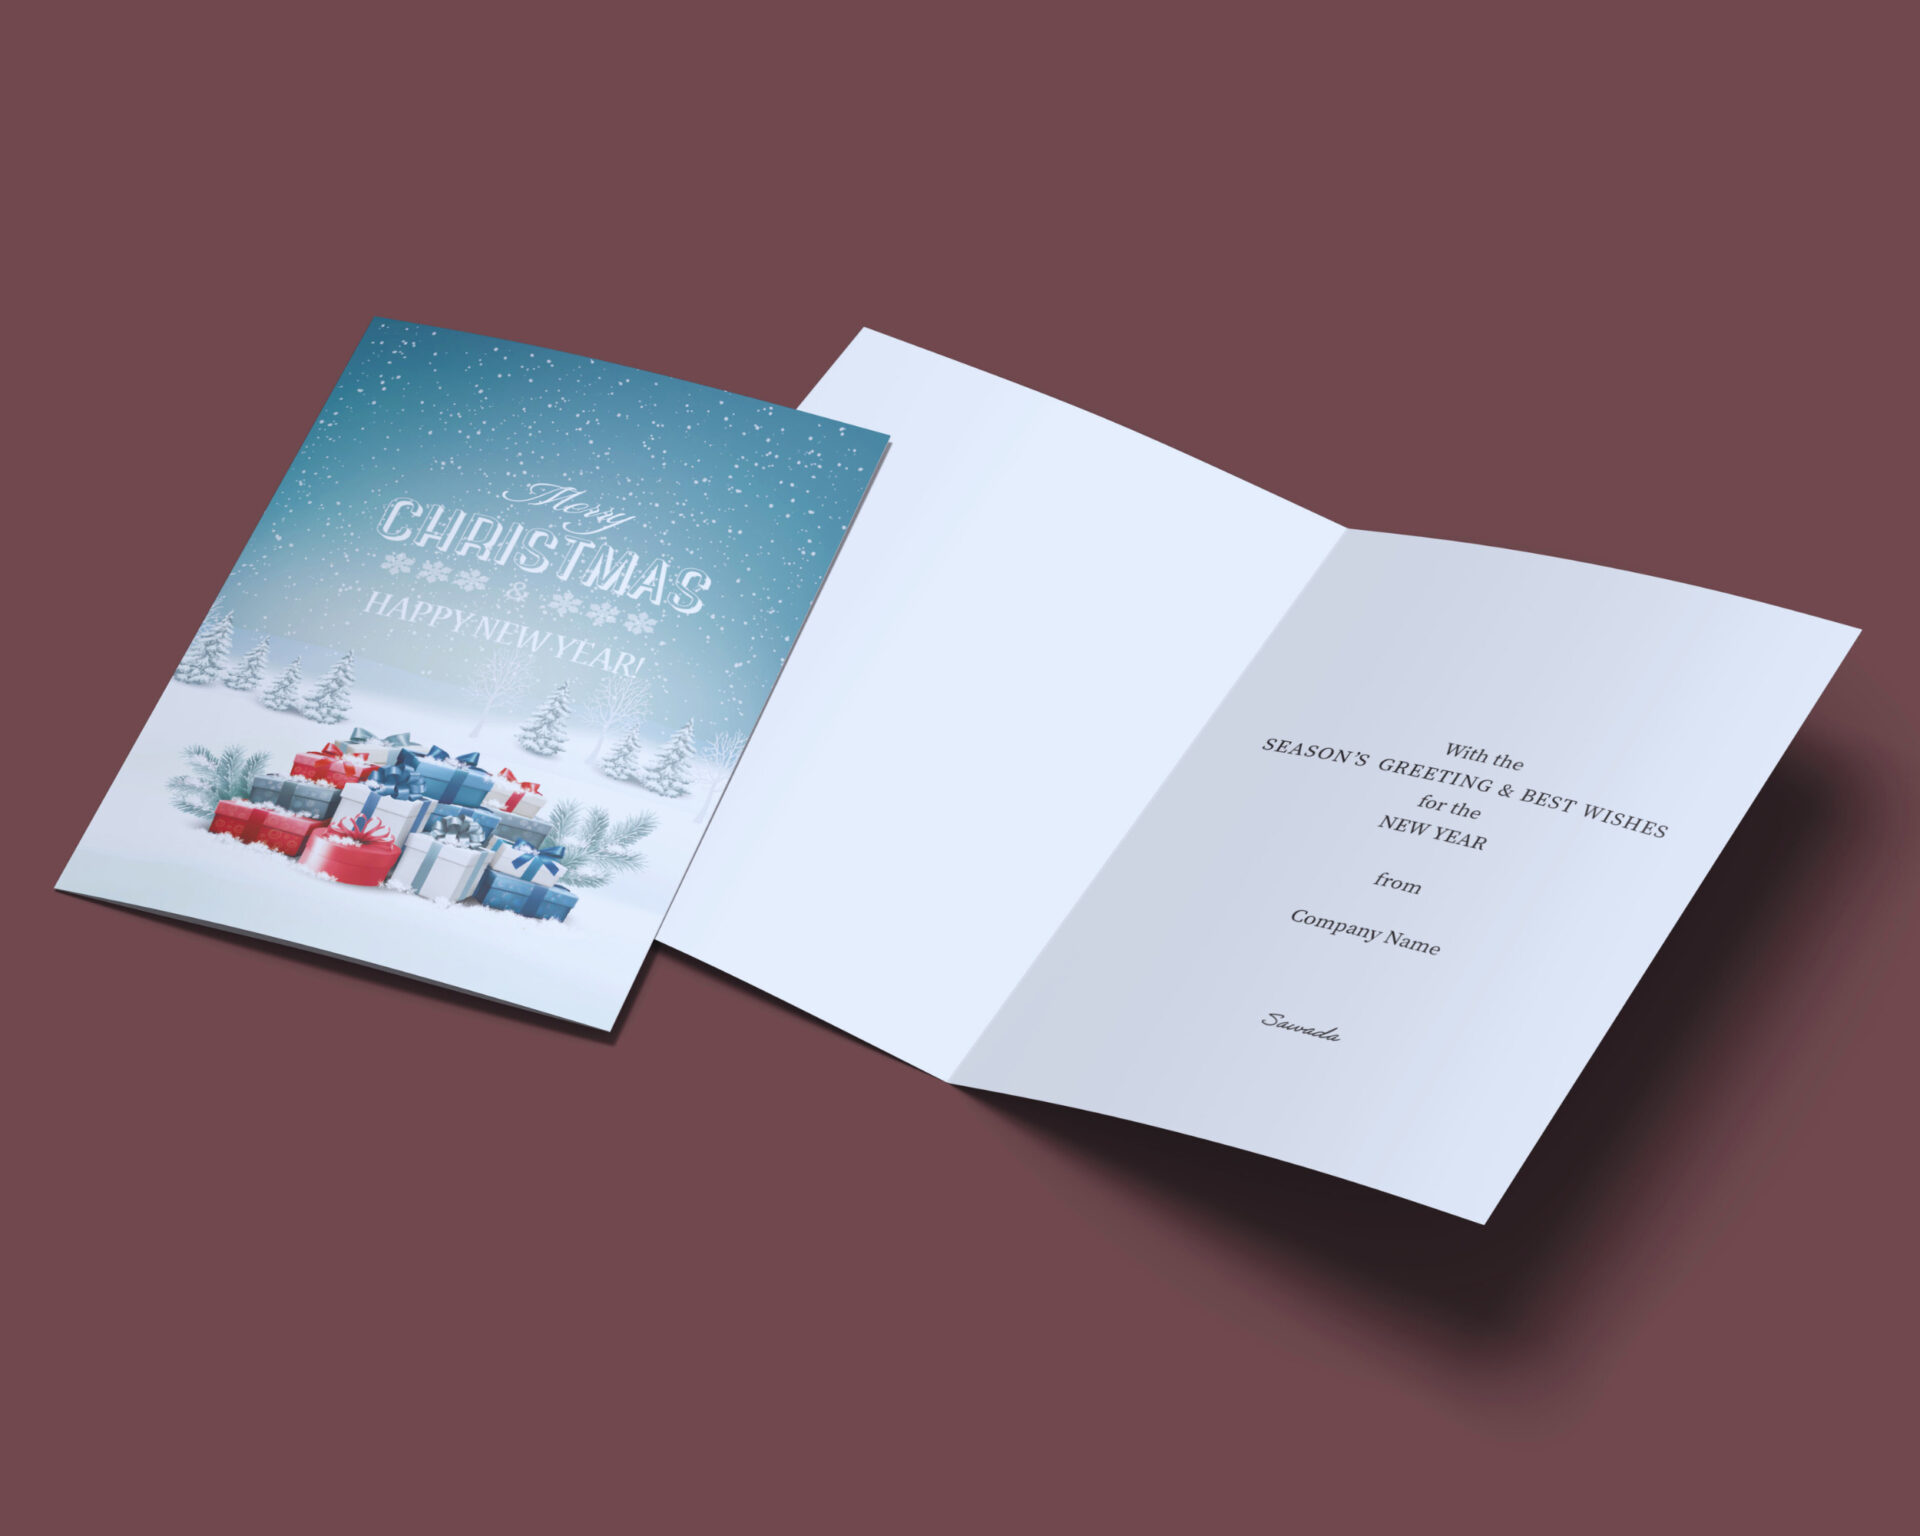 ヨーロッパ企業クリスマスカード